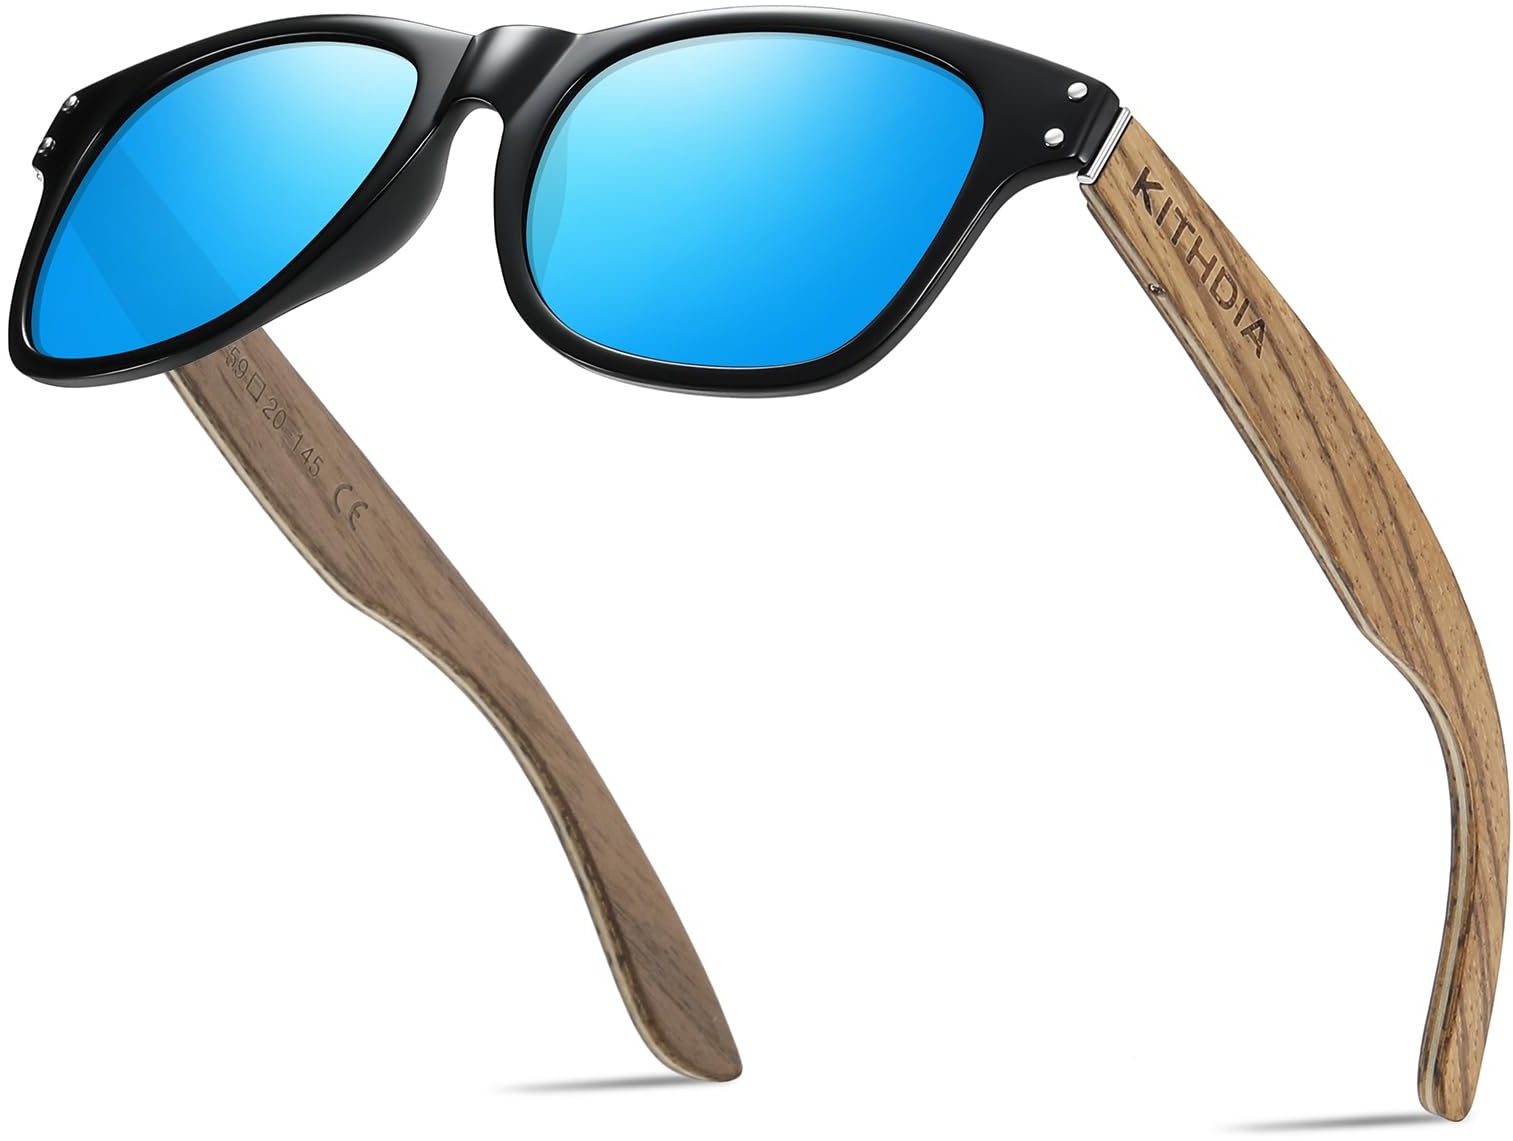 KITHDIA Holz Sonnenbrillen Polarisierte Sonnenbrille,Herren Damen Polarisierte holz brille,Polarisierende Brillengläser mit UV400-Schutz S8001